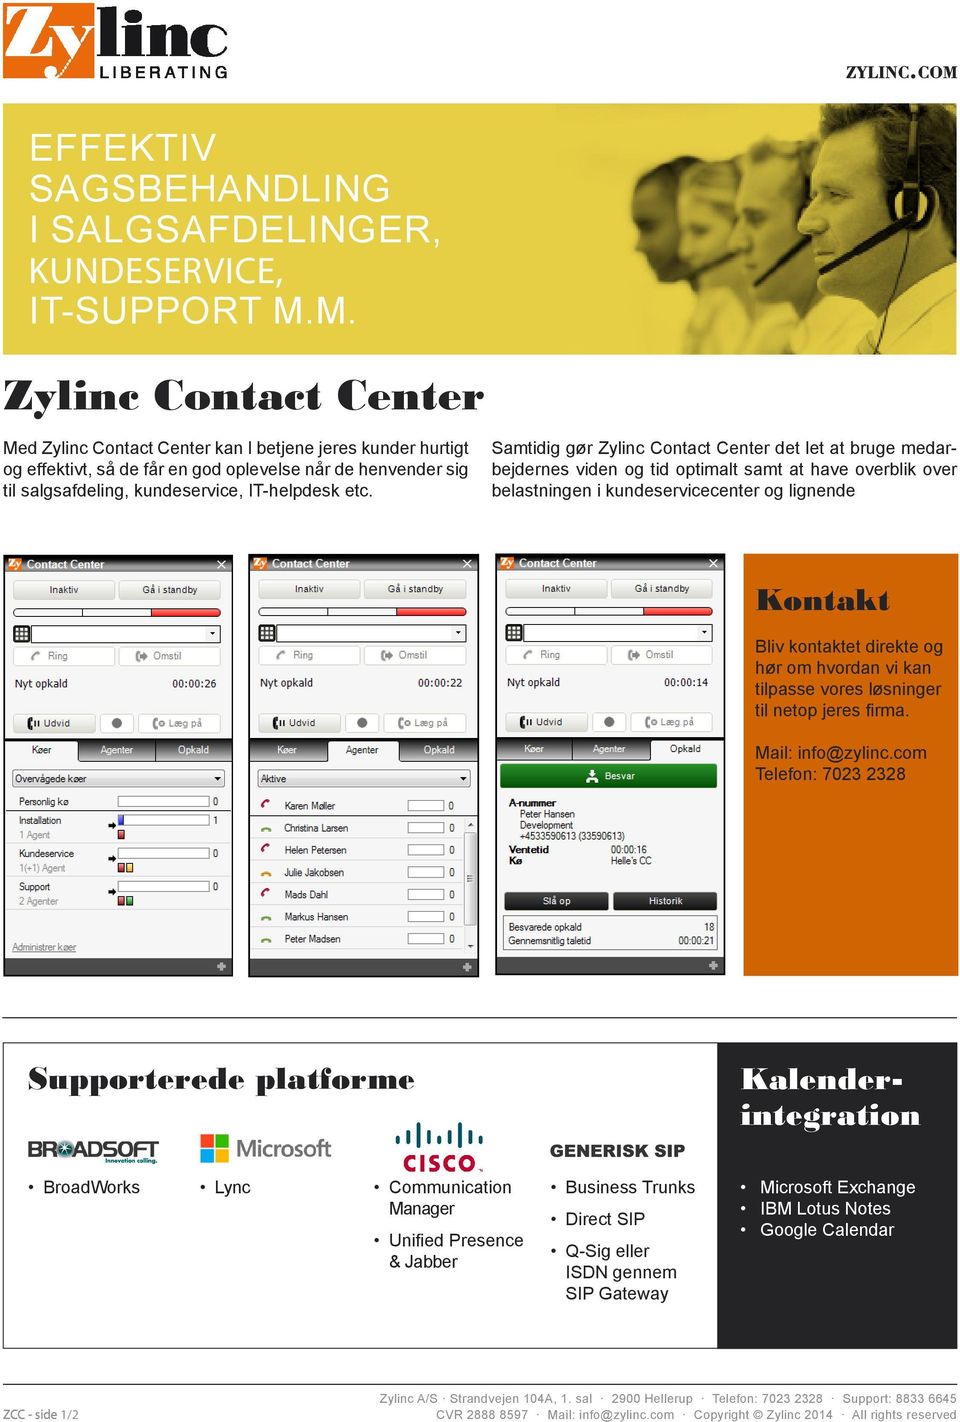 Samtidig gør Zylinc Contact Center det let at bruge medarbejdernes viden og tid optimalt samt at have overblik over belastningen i kundeservicecenter og lignende Kontakt Bliv kontaktet direkte og hør